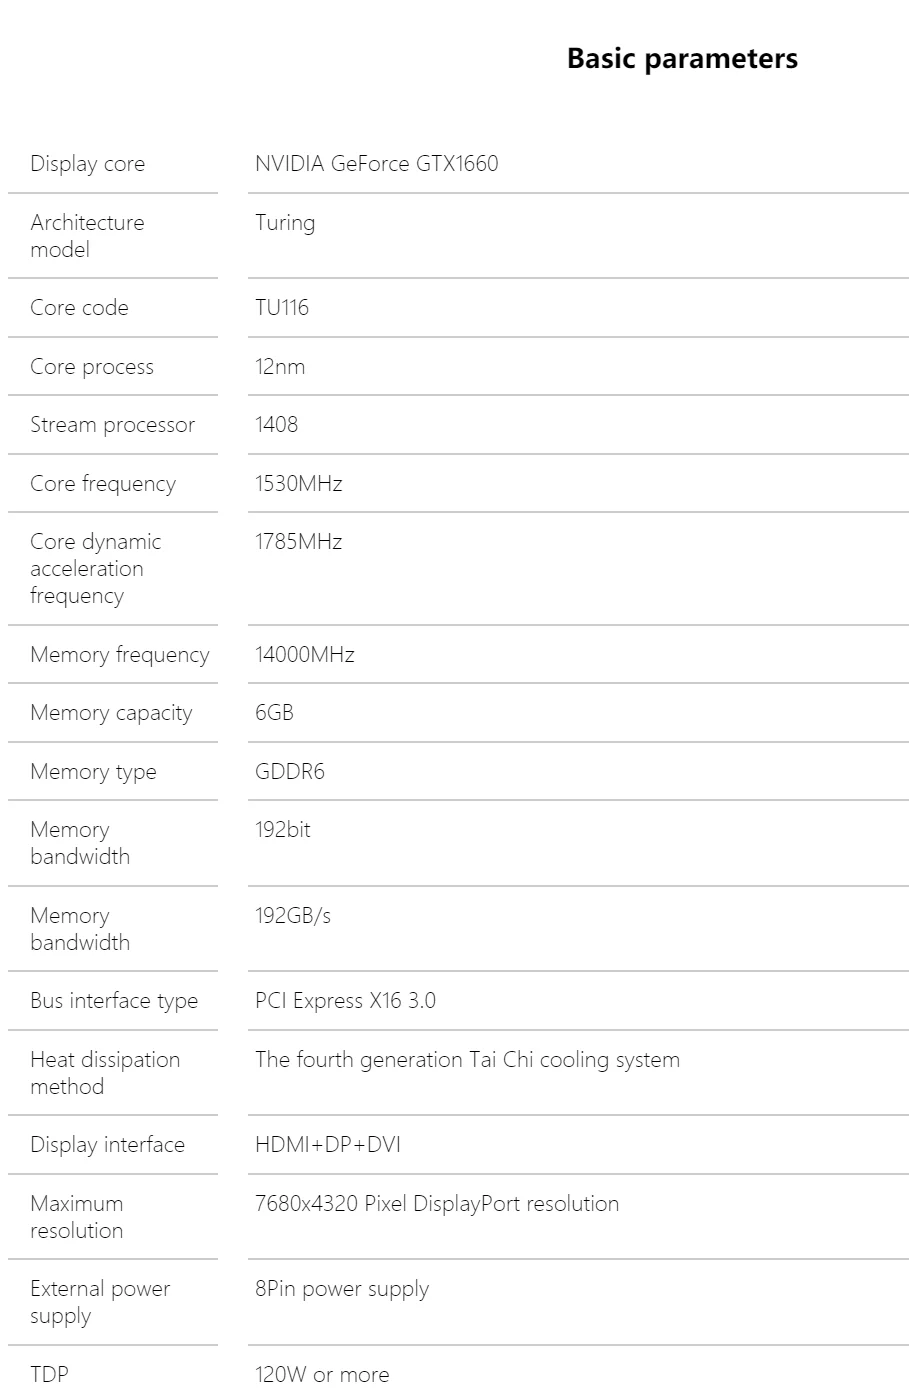 Опубликованы цены, параметры и фото видеокарты Nvidia GeForce GTX 1660 Super - фото 1